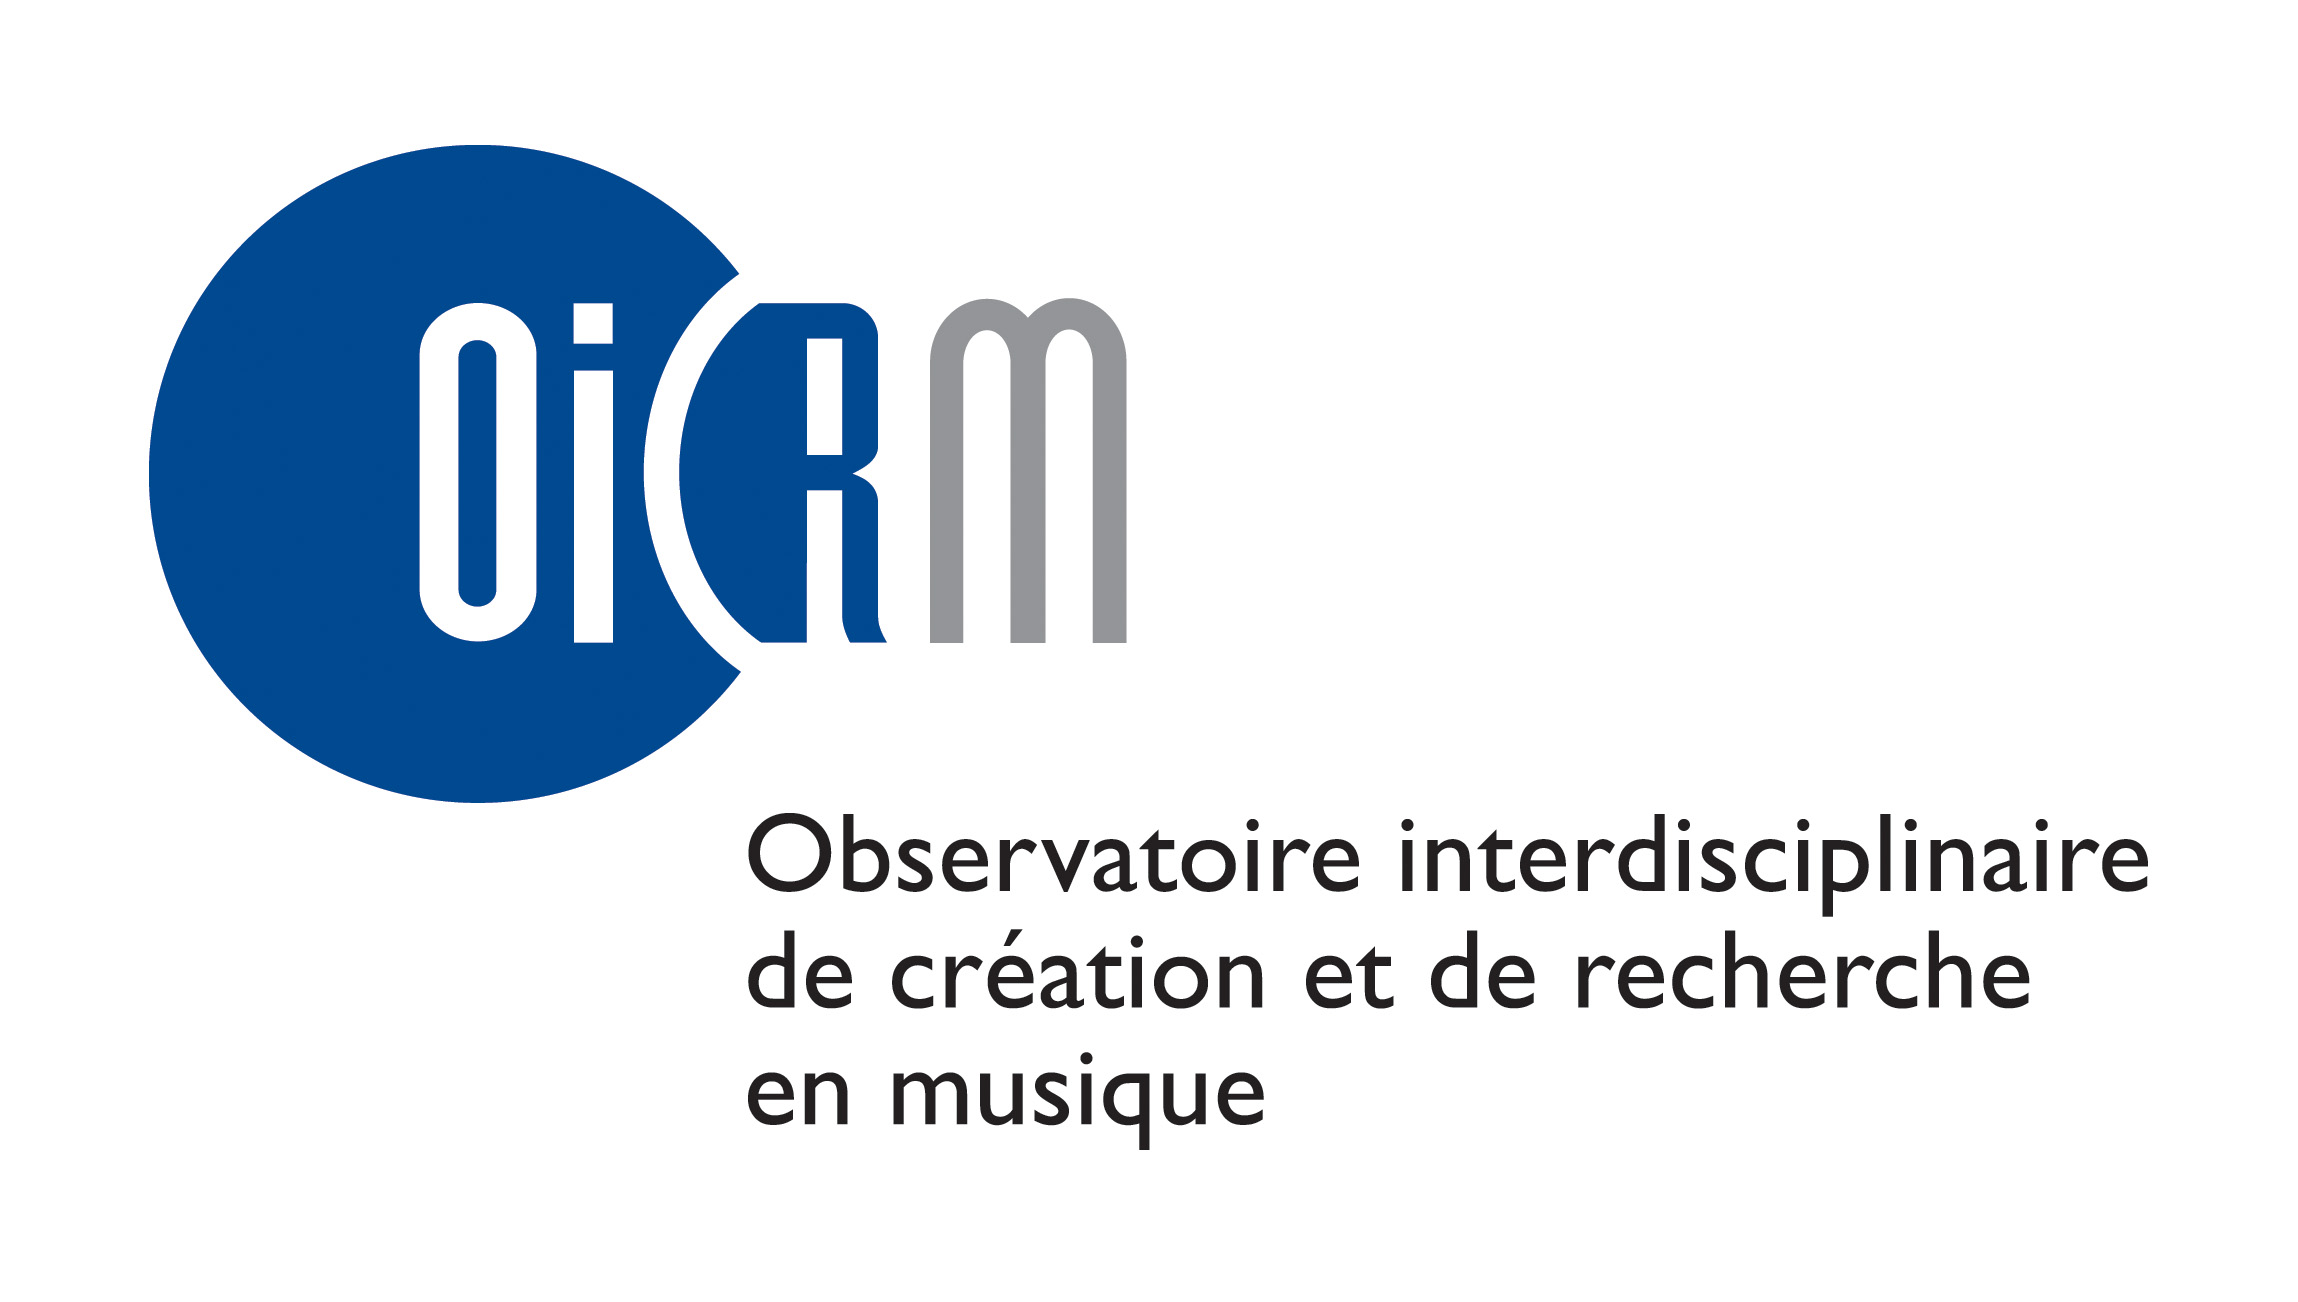 oicrm_logo.jpg